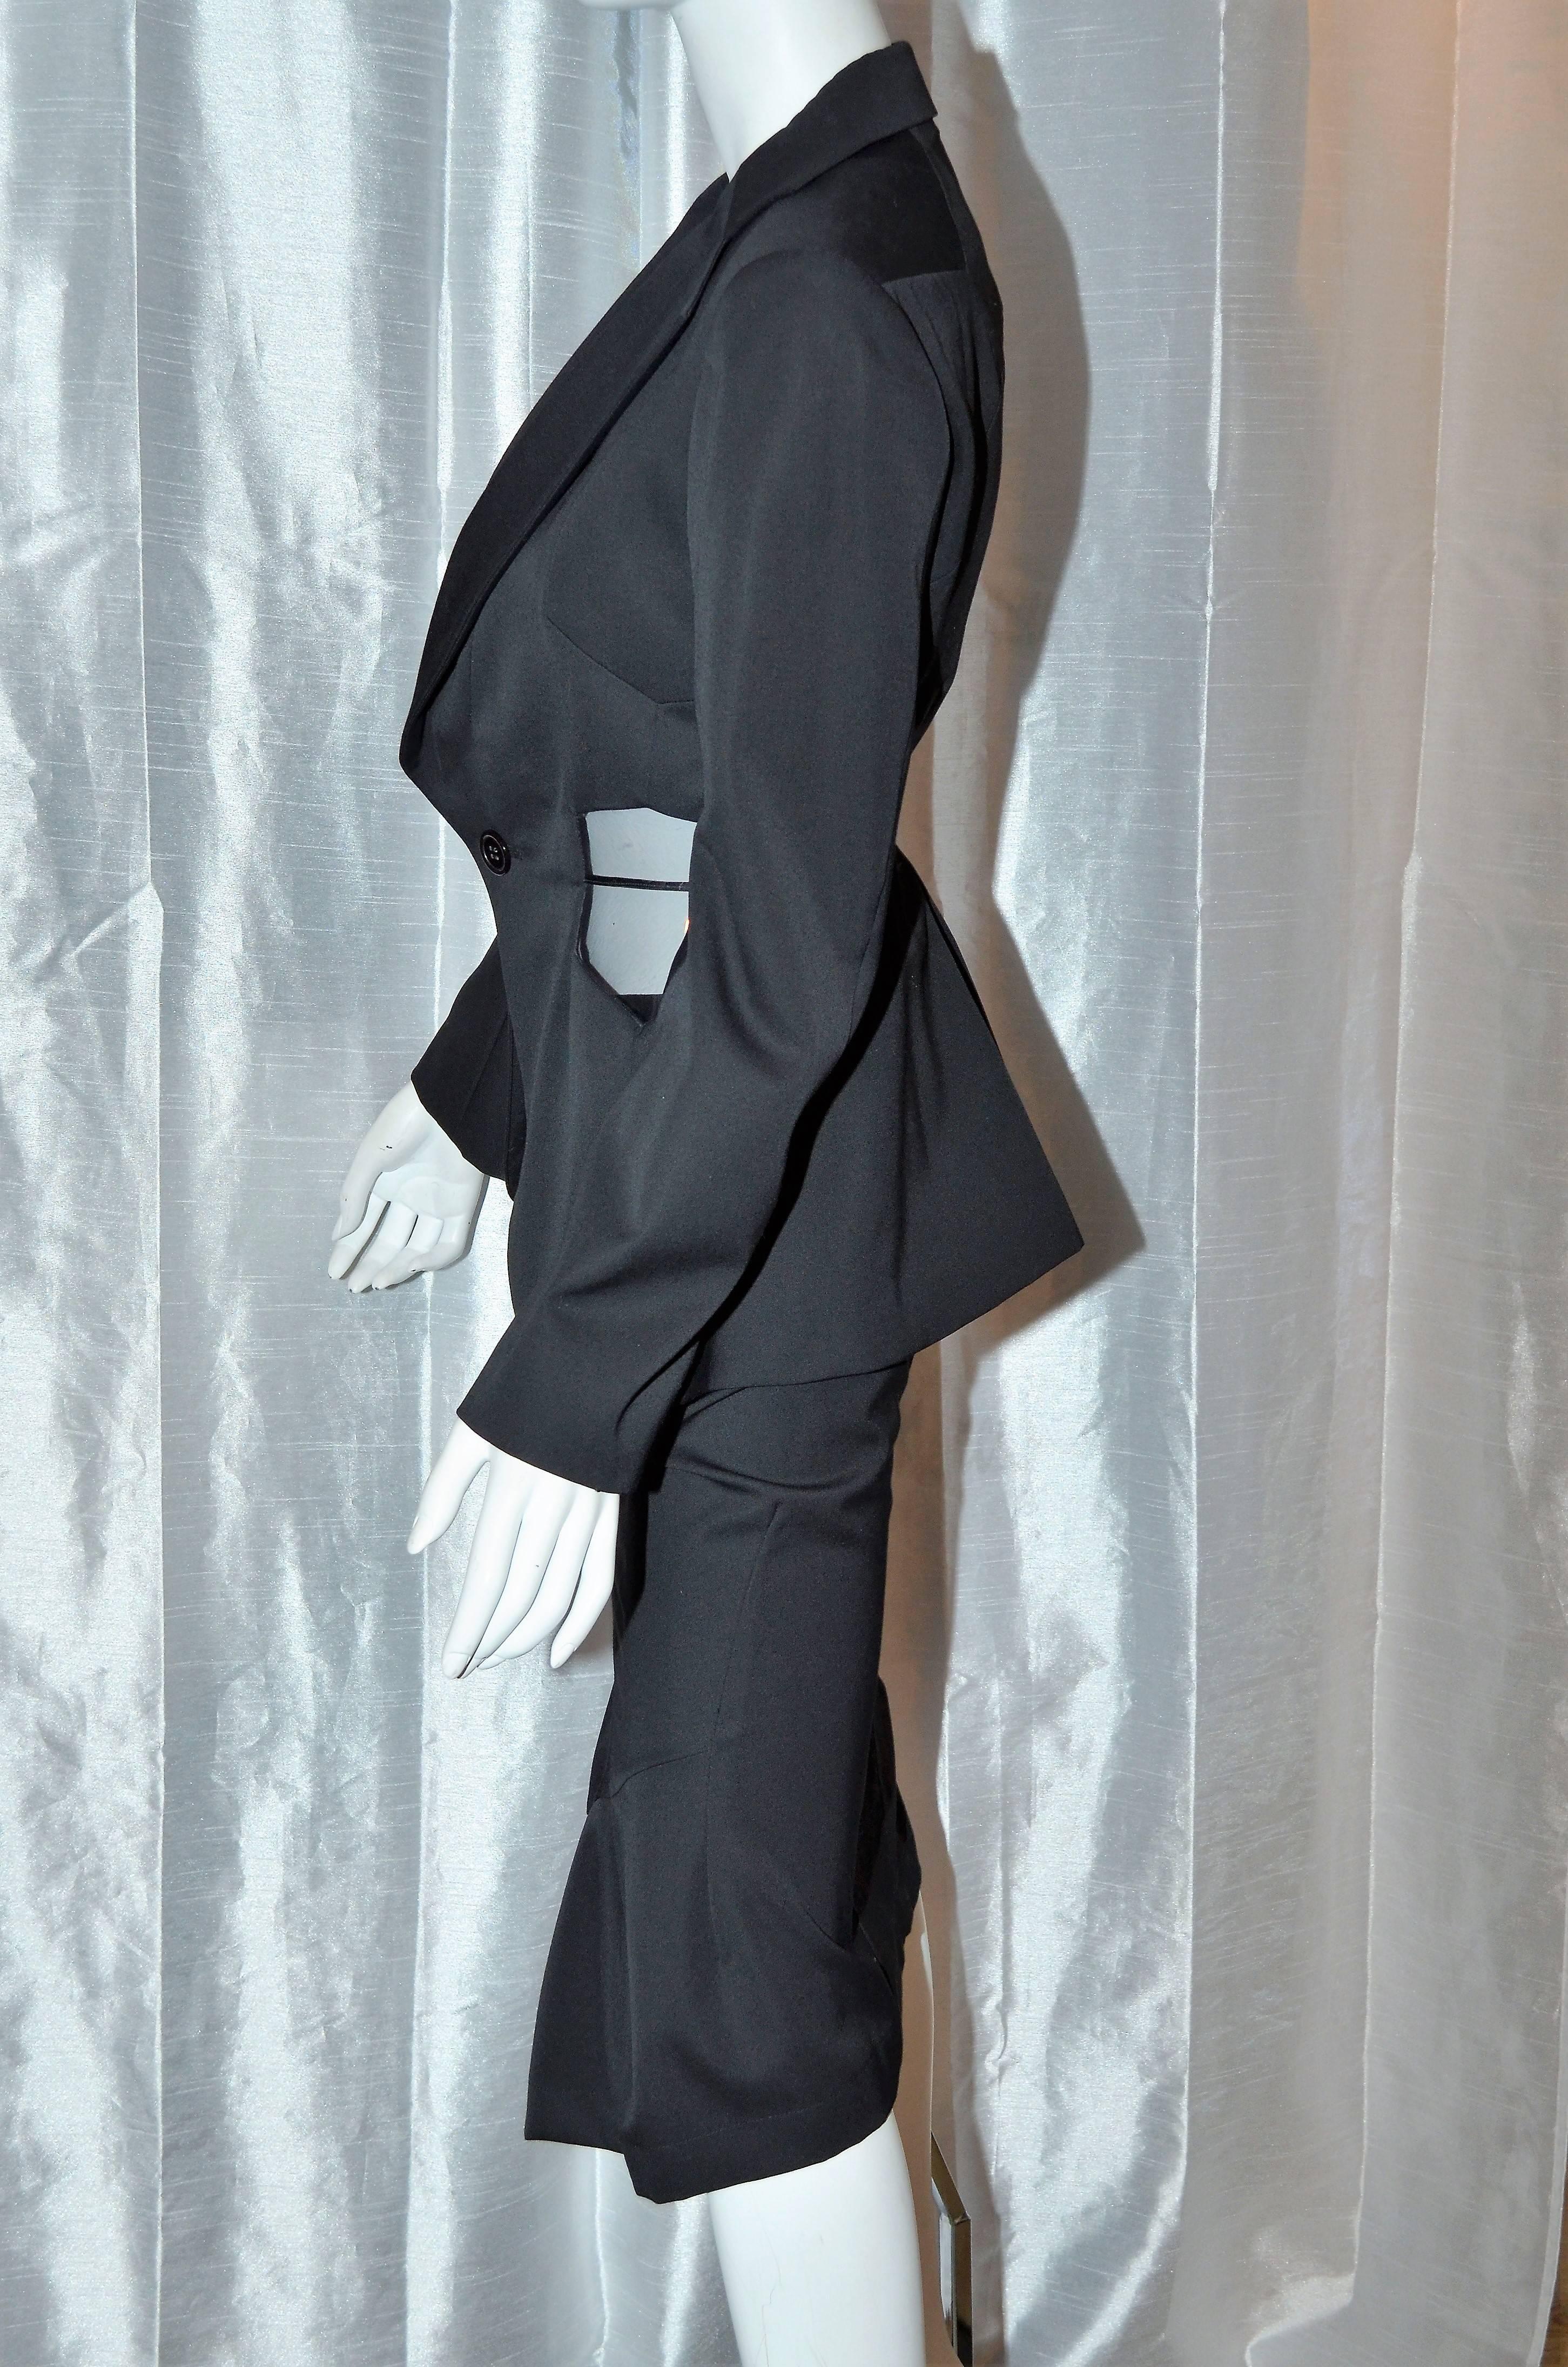 Comme des Garçons Junya Watanabe Schwarzer Rock Jacke Anzug aus Wolle von 2001
See Through Panels an der Taille der Jacke, zurück Stil Linien in der Form eines Fußballs.
Der Rock ist mit einer Sanduhr-Silhouette ausgestattet, ein Bleistiftrock mit